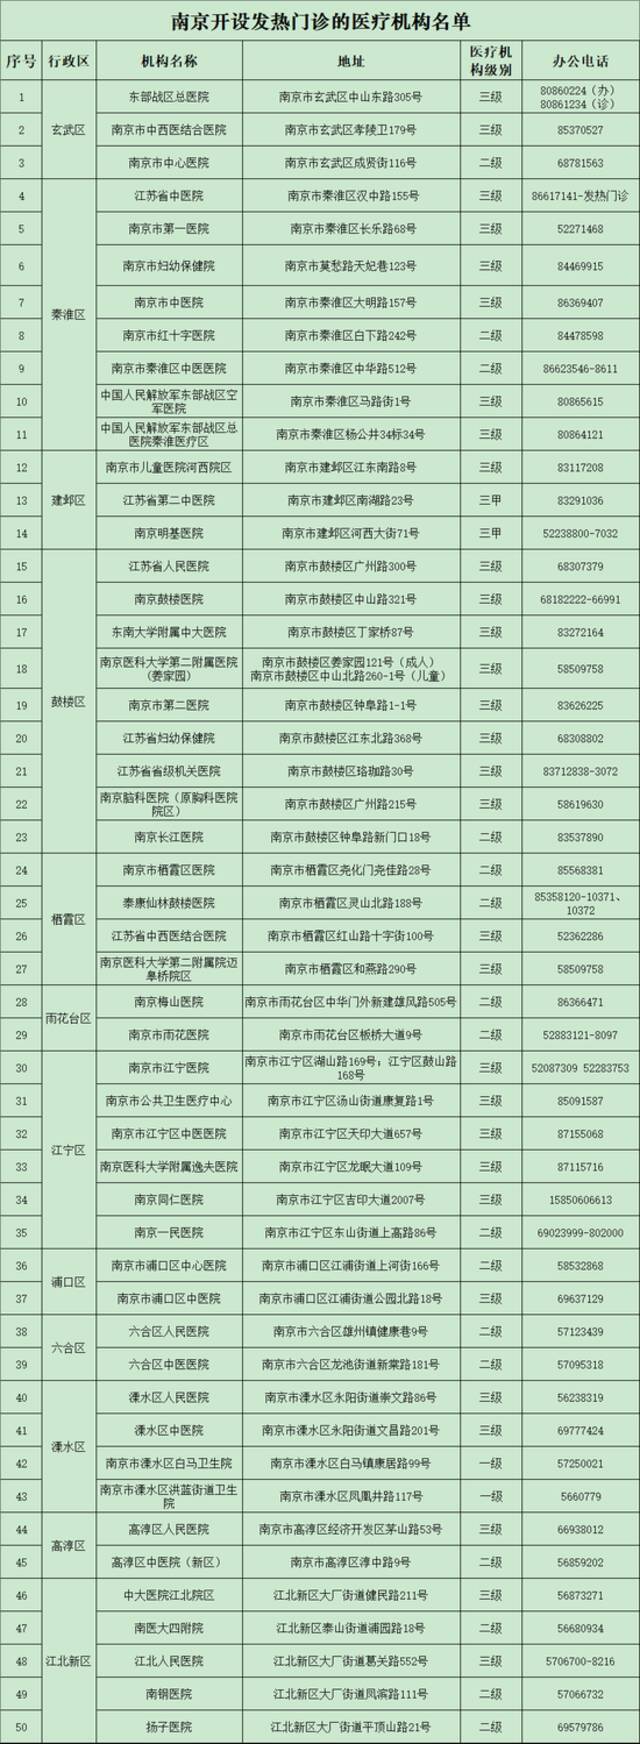 南京新增7例本土确诊、2例无症状 活动轨迹公布